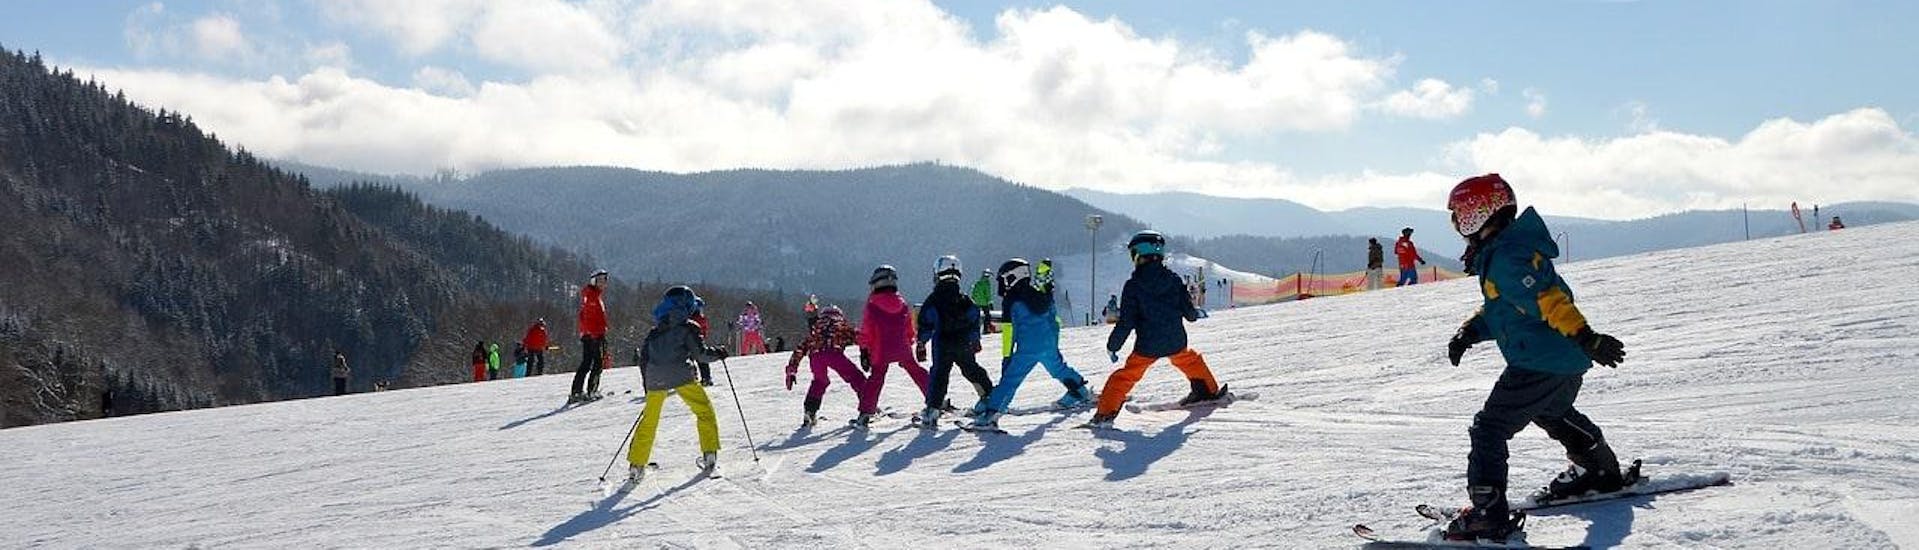 Beim Kinder Skikurs (5-12 Jahre) - Wochenende - Alle Levels der Skischule Moonshot La Bresse fahren mehrere Kinder die Skipiste hinunter.